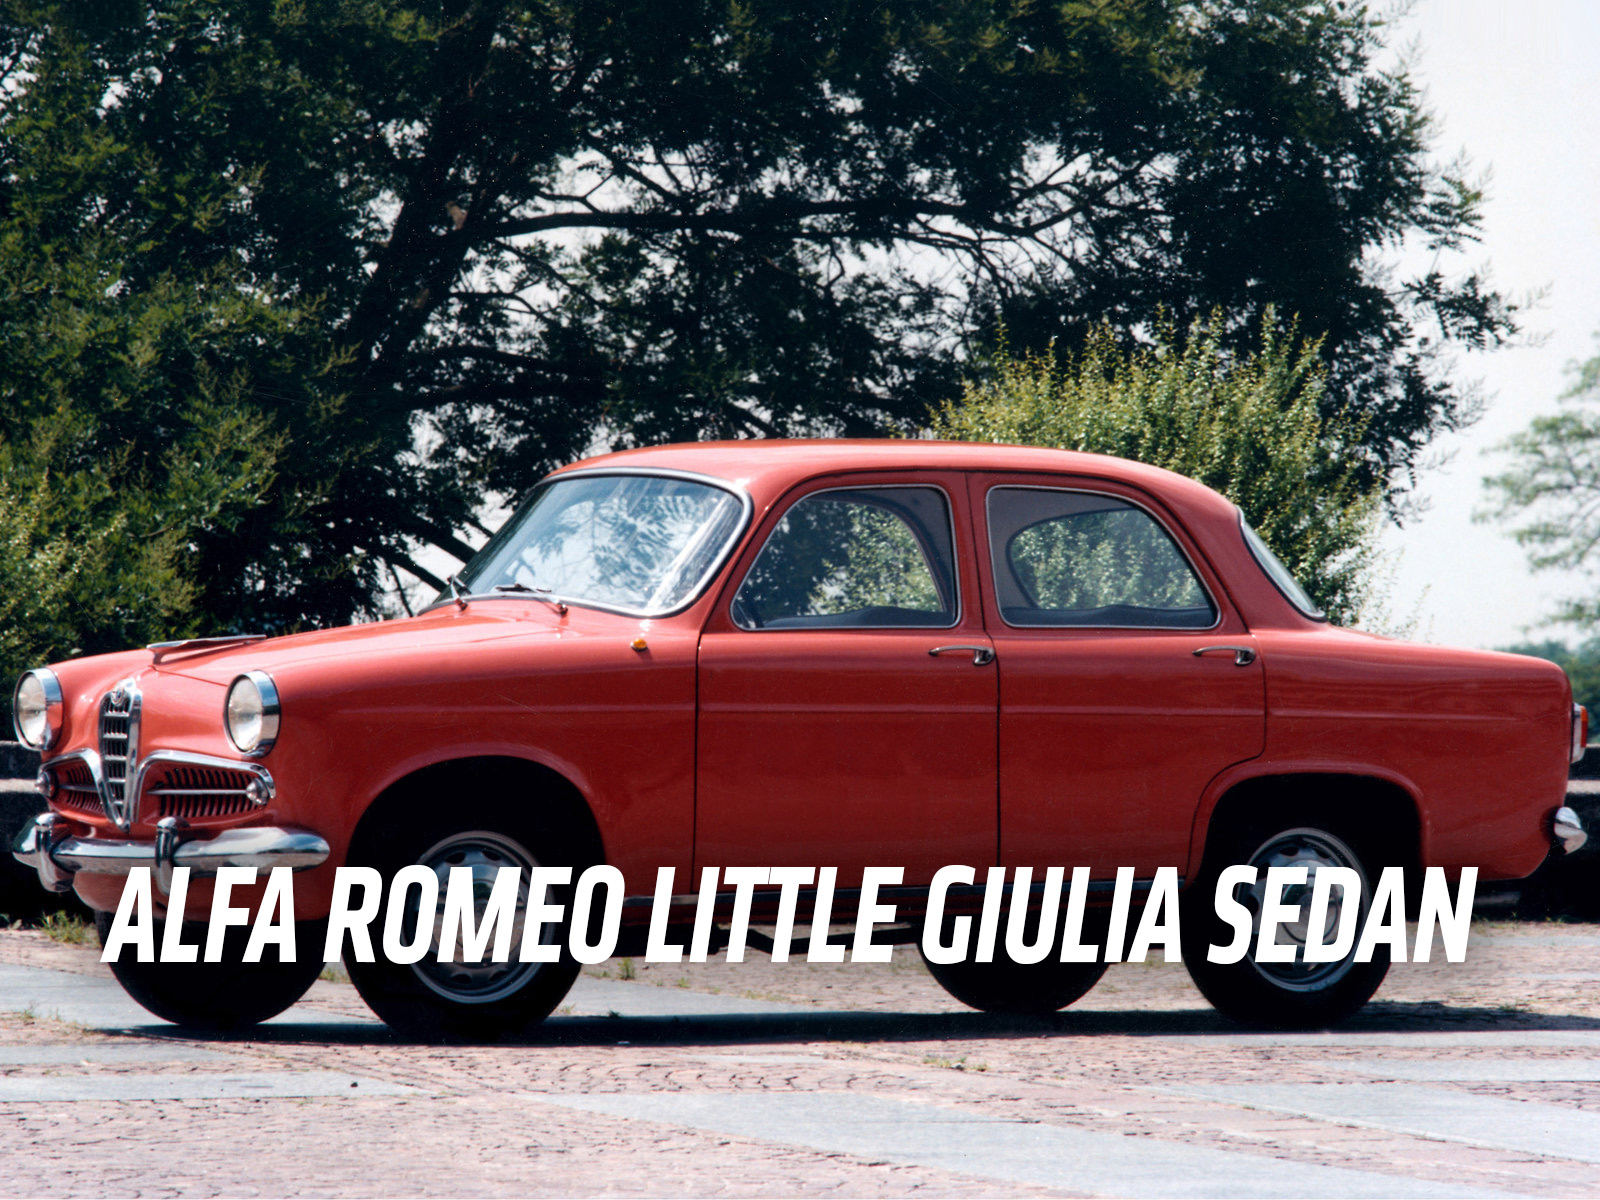 If Italian Cars Had English Names Instead